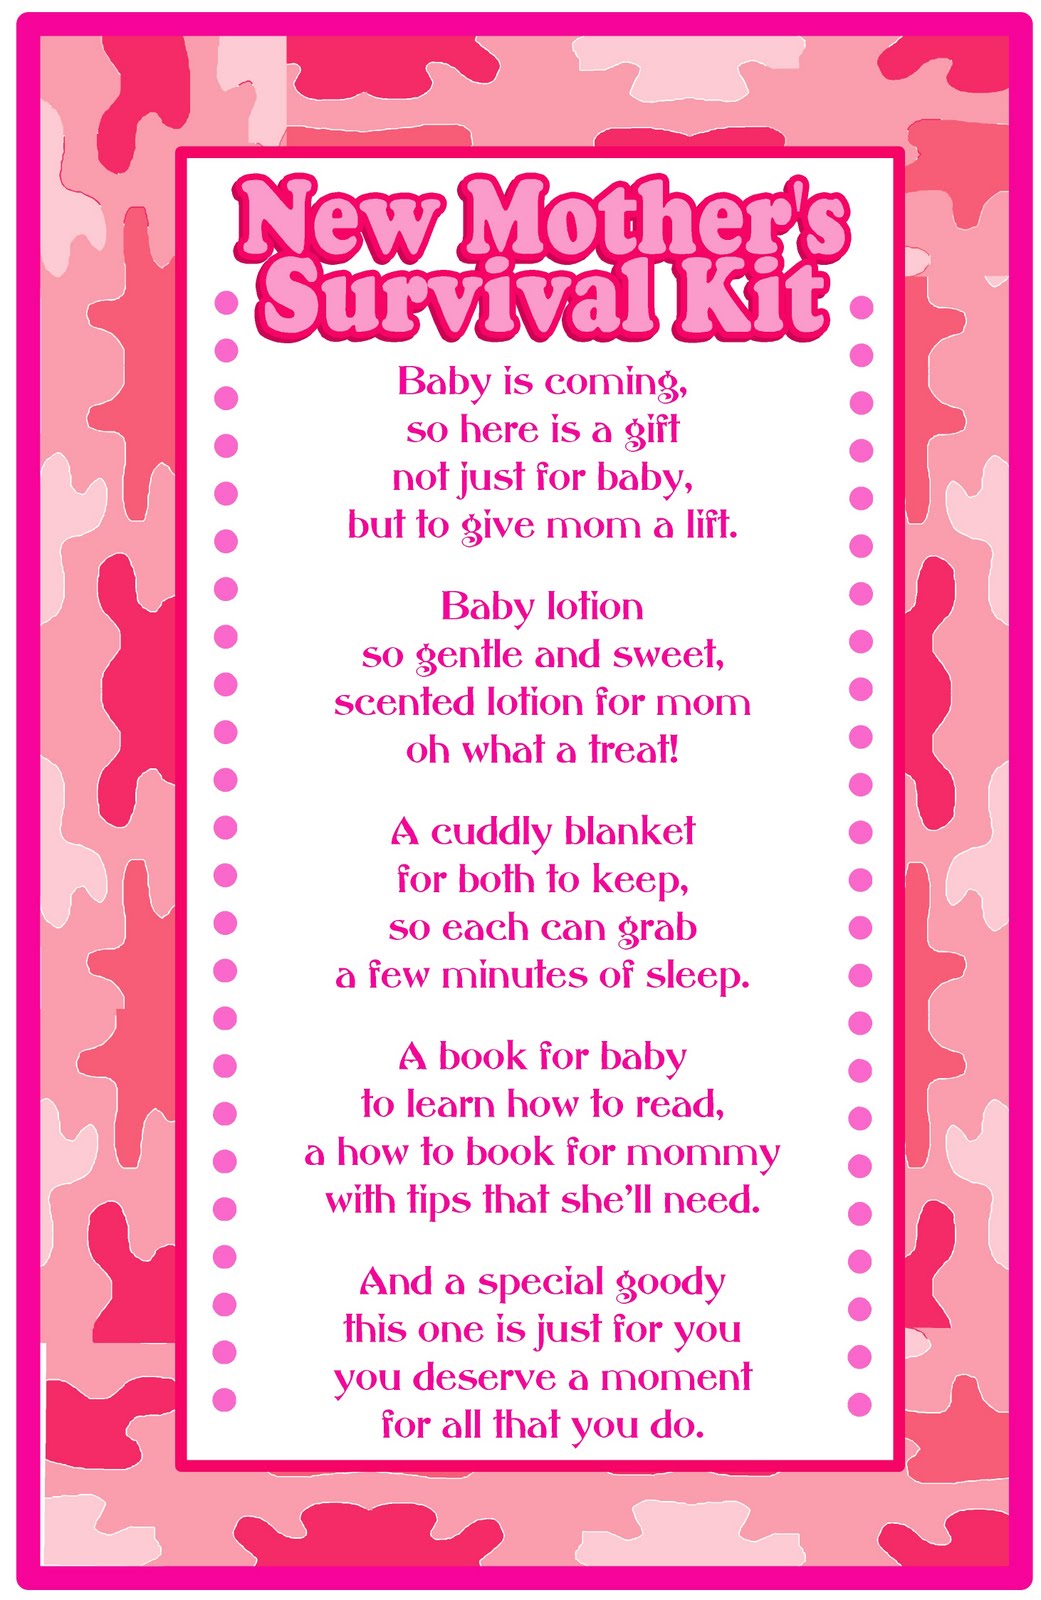 Baby Shower Gift- Survival Kit - Darling Doodles